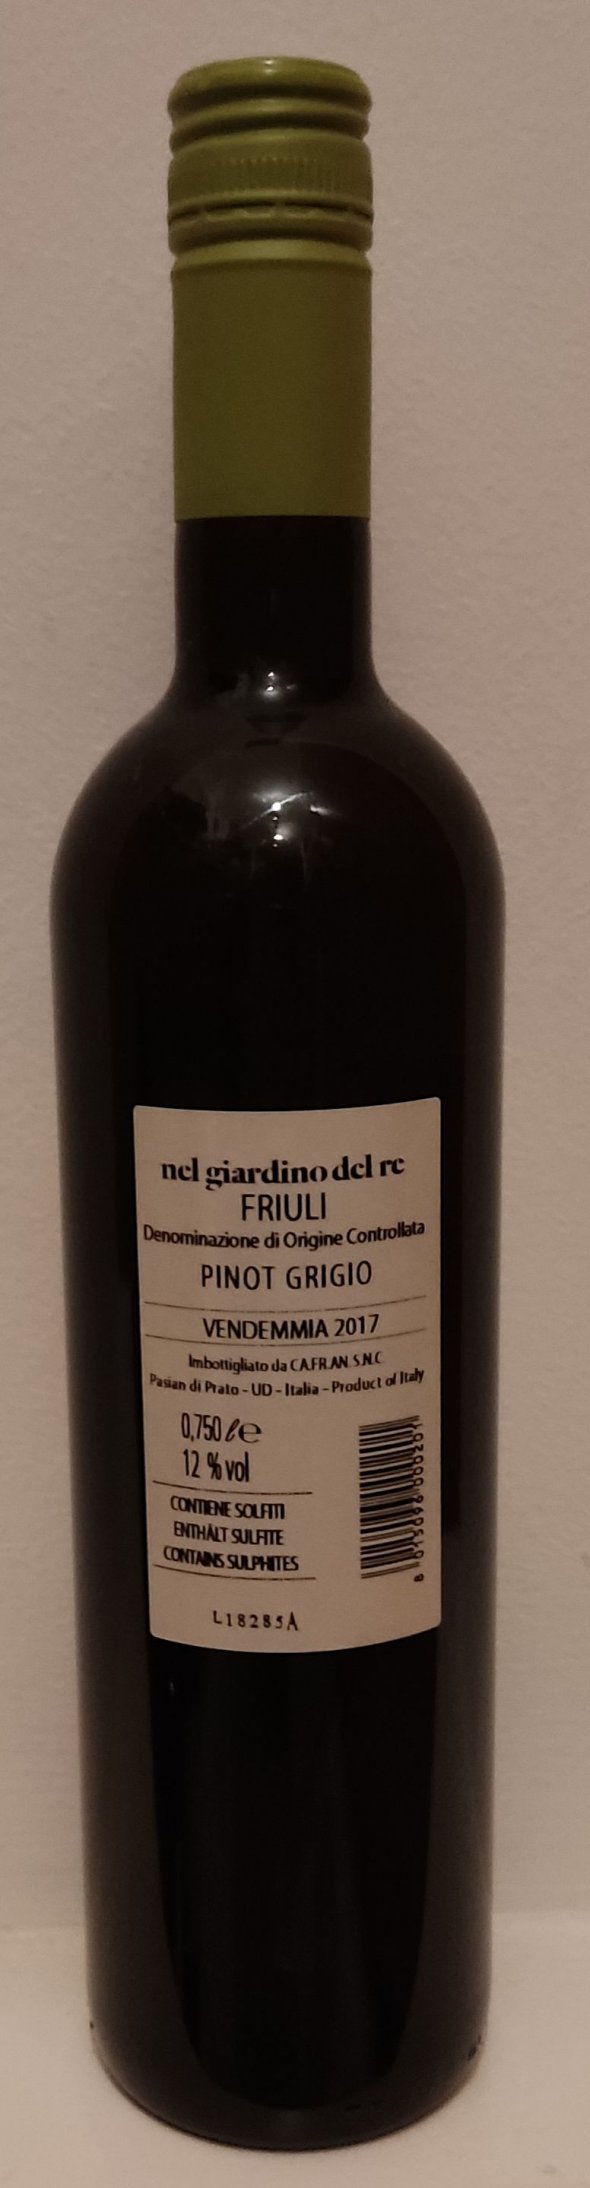 Pinot Grigio, Nel giardino del re